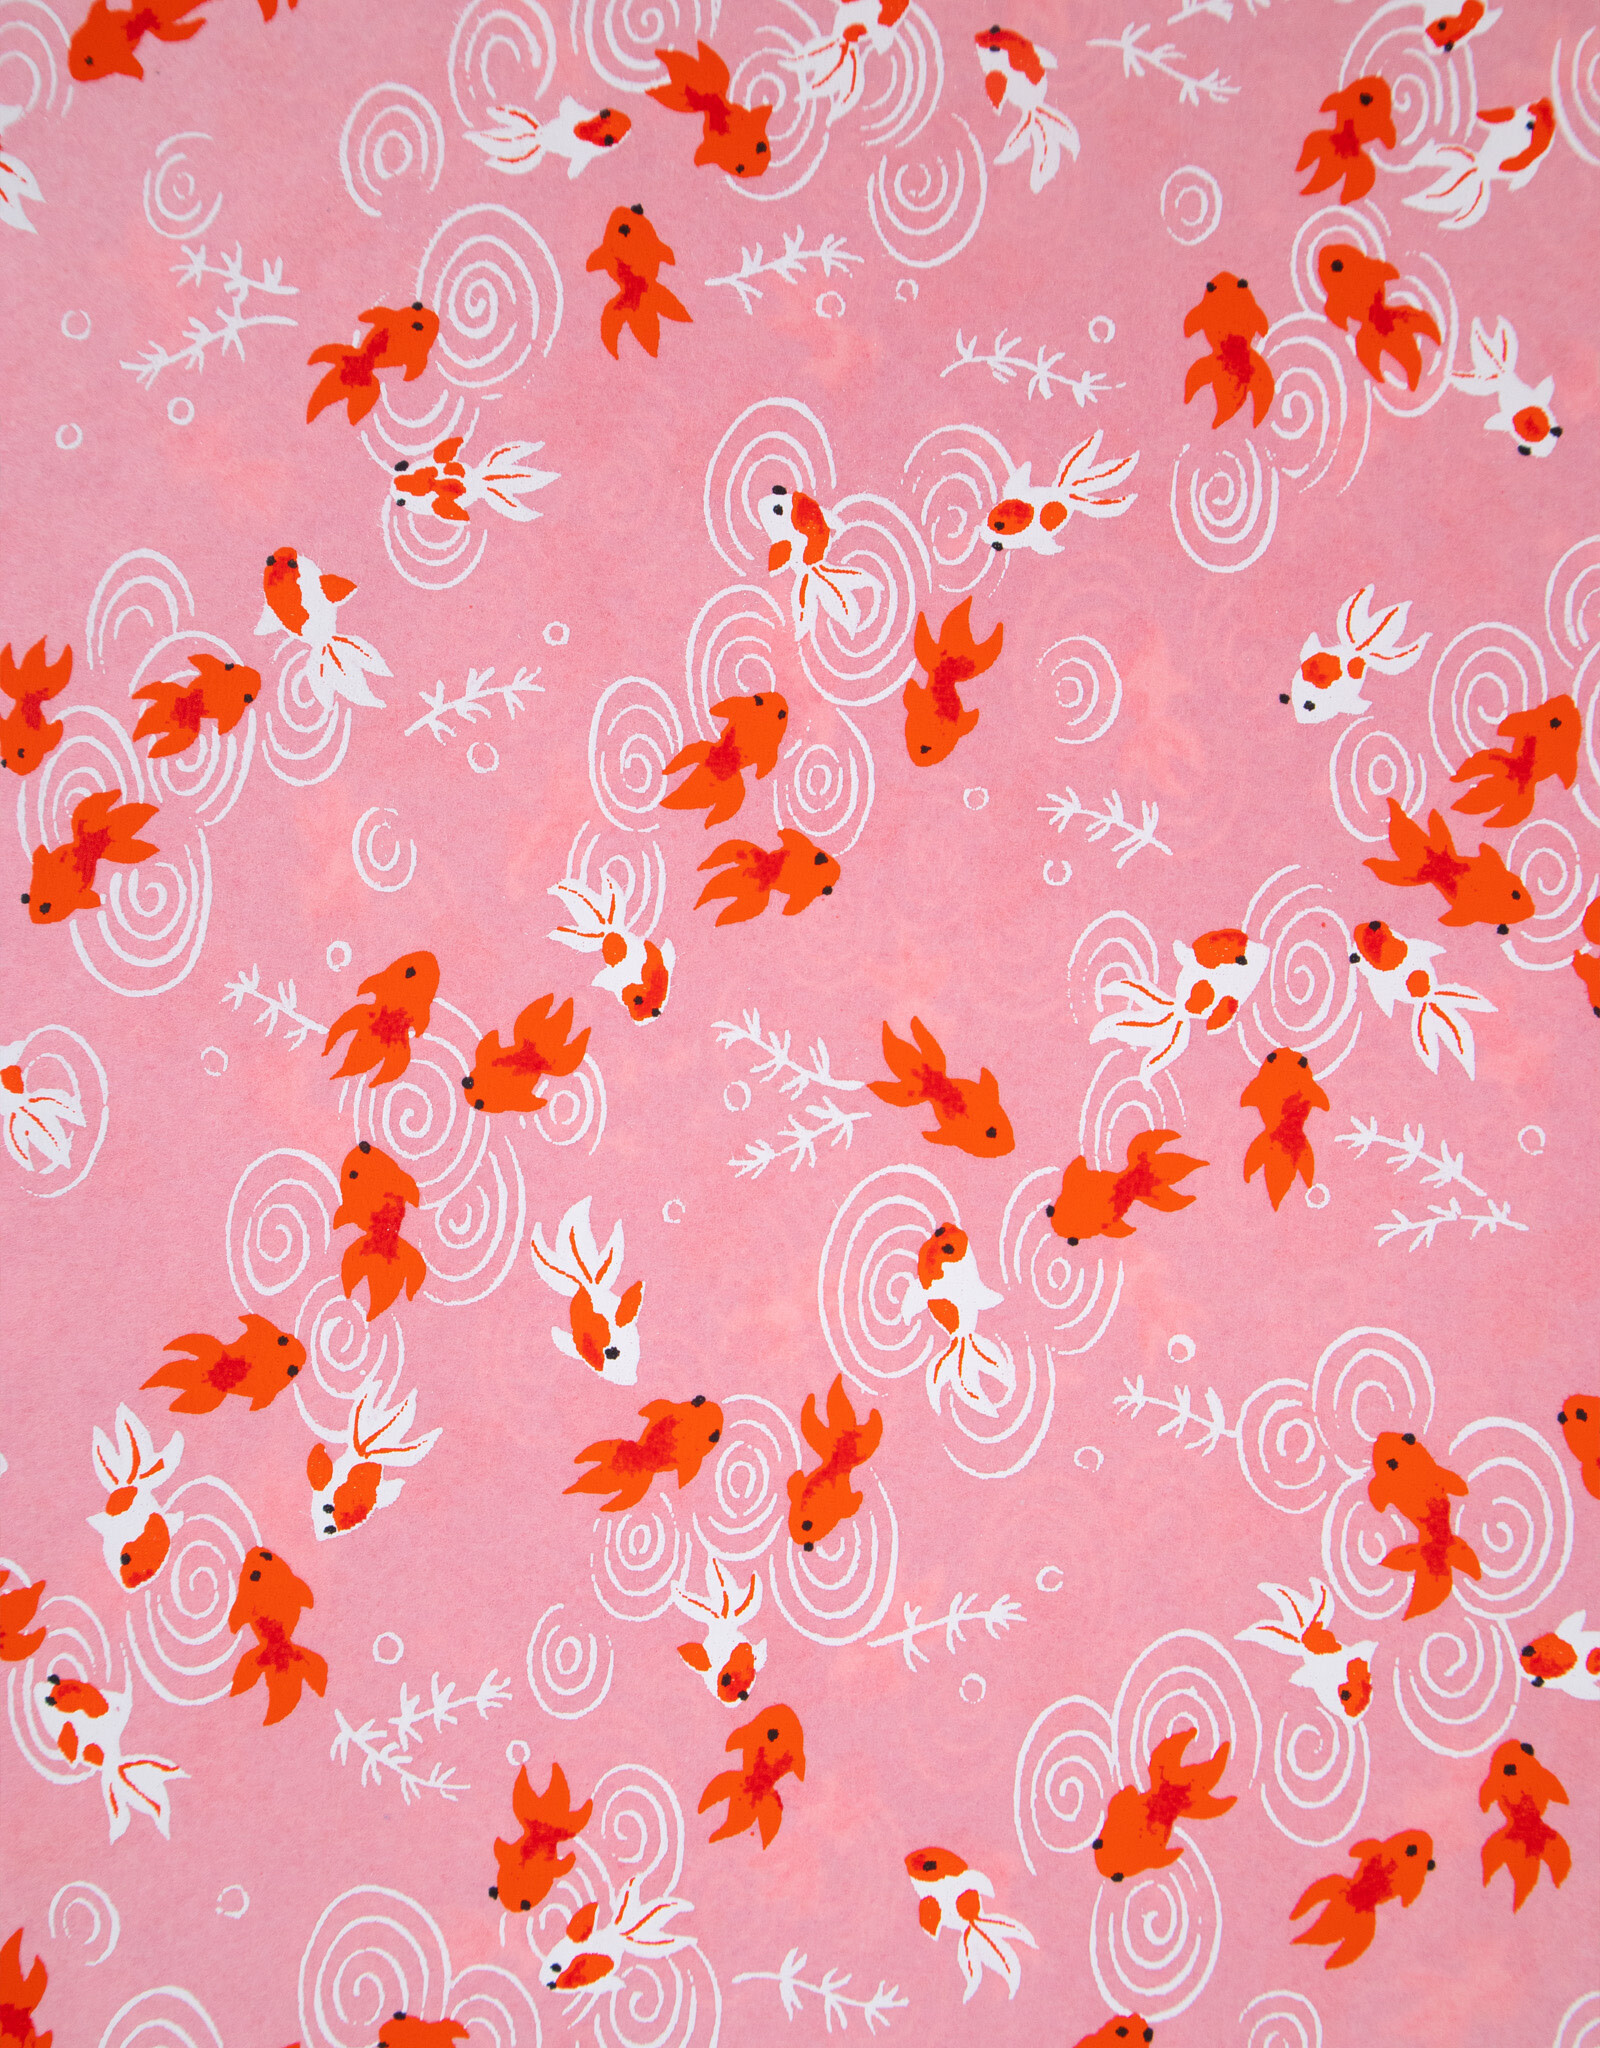 AITOH Aitoh Yuzenshi: Goldfish on Pink, 19" x 26"